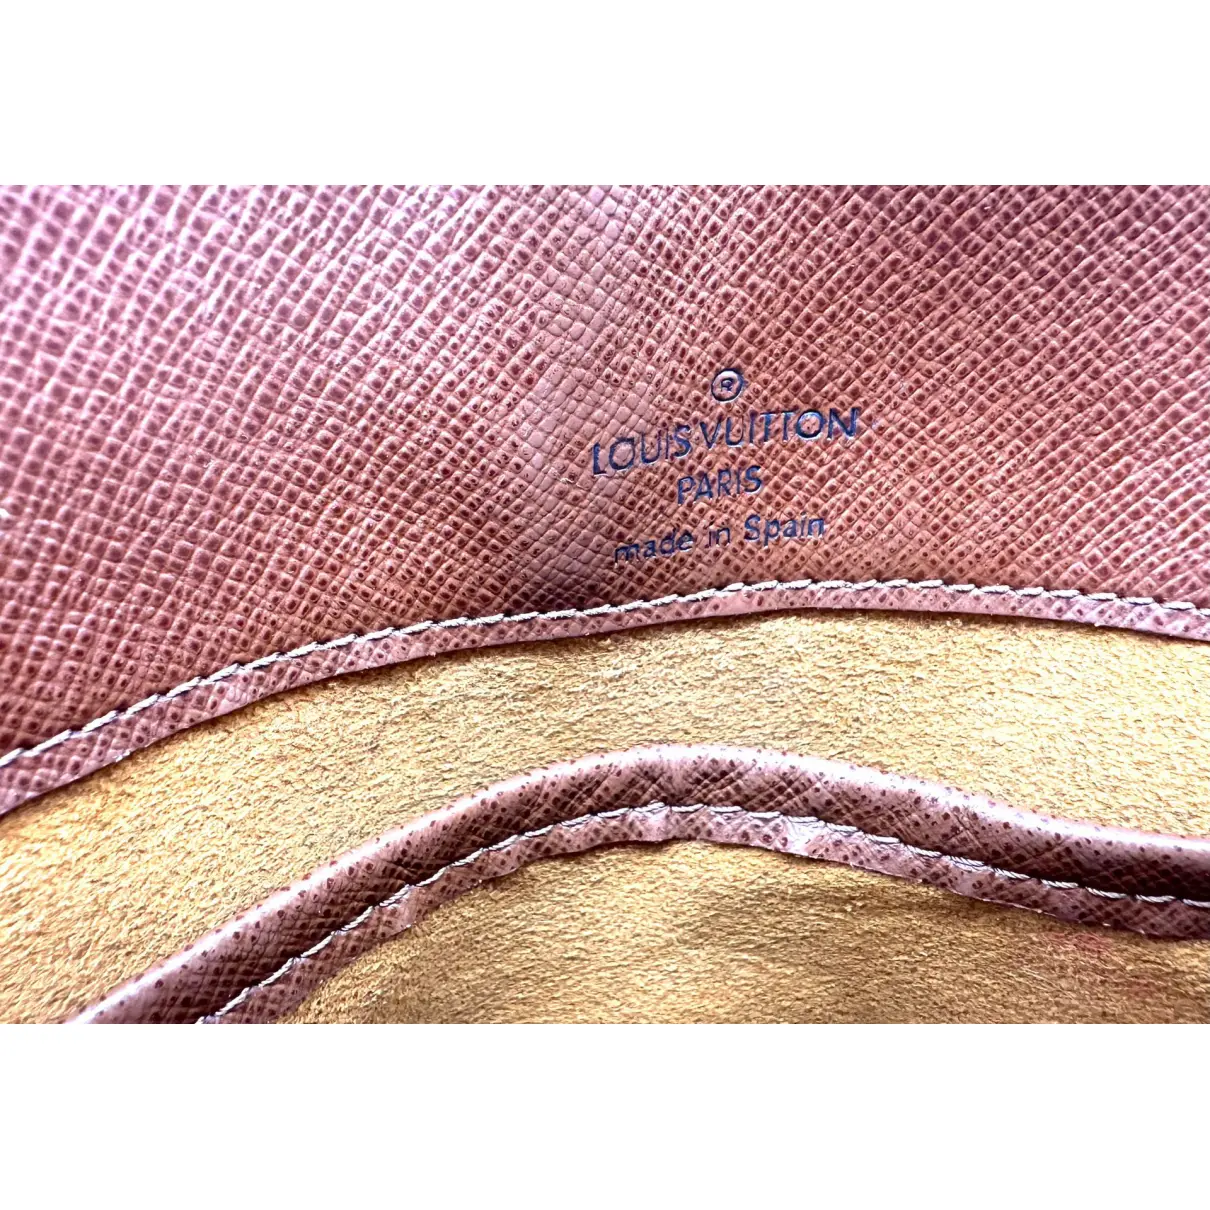 Abbesses Messenger cloth bag Louis Vuitton - Vintage